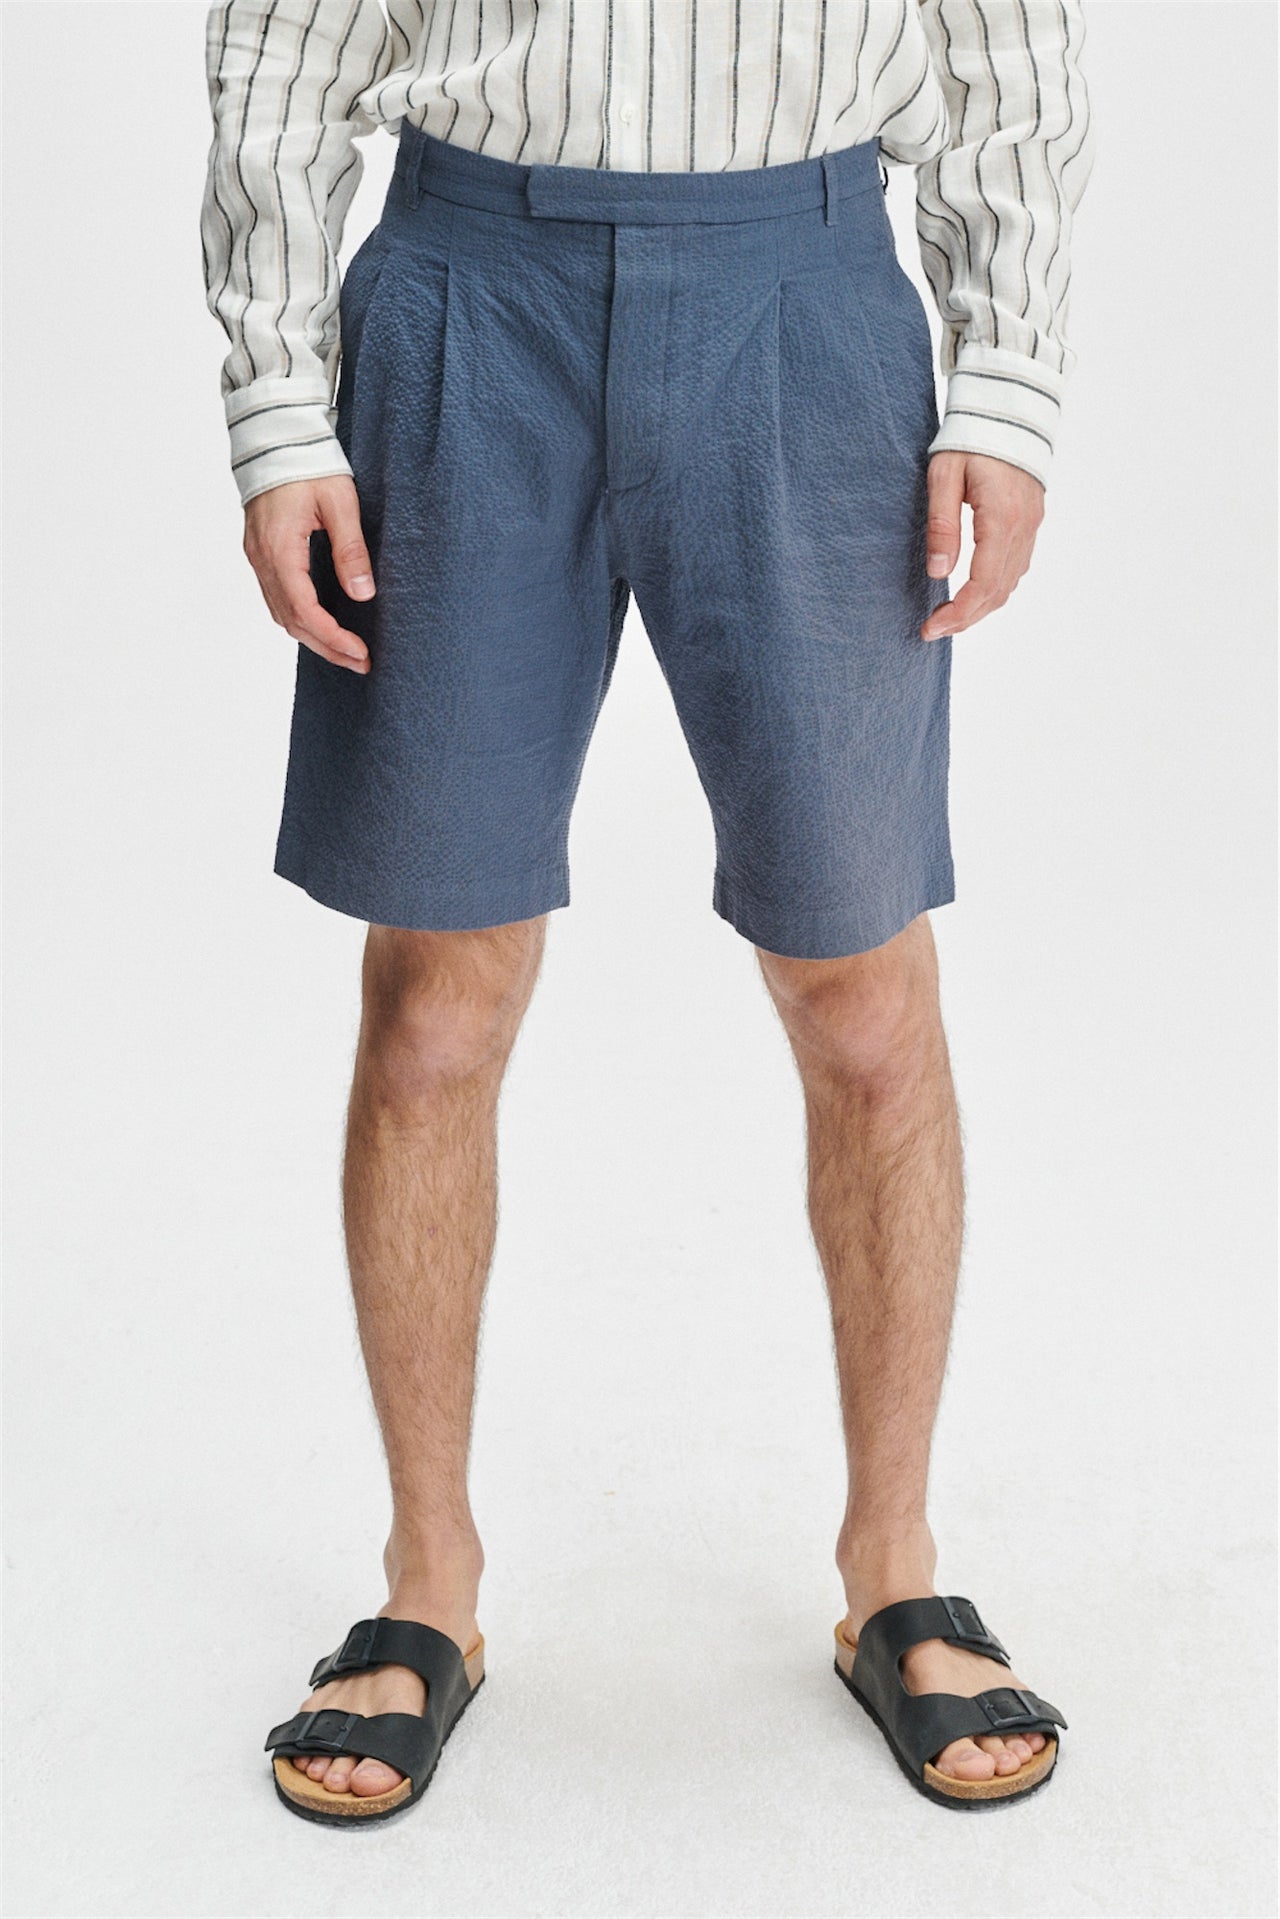 Bermuda Trousers in a Blue Italian Cotton Seersucker